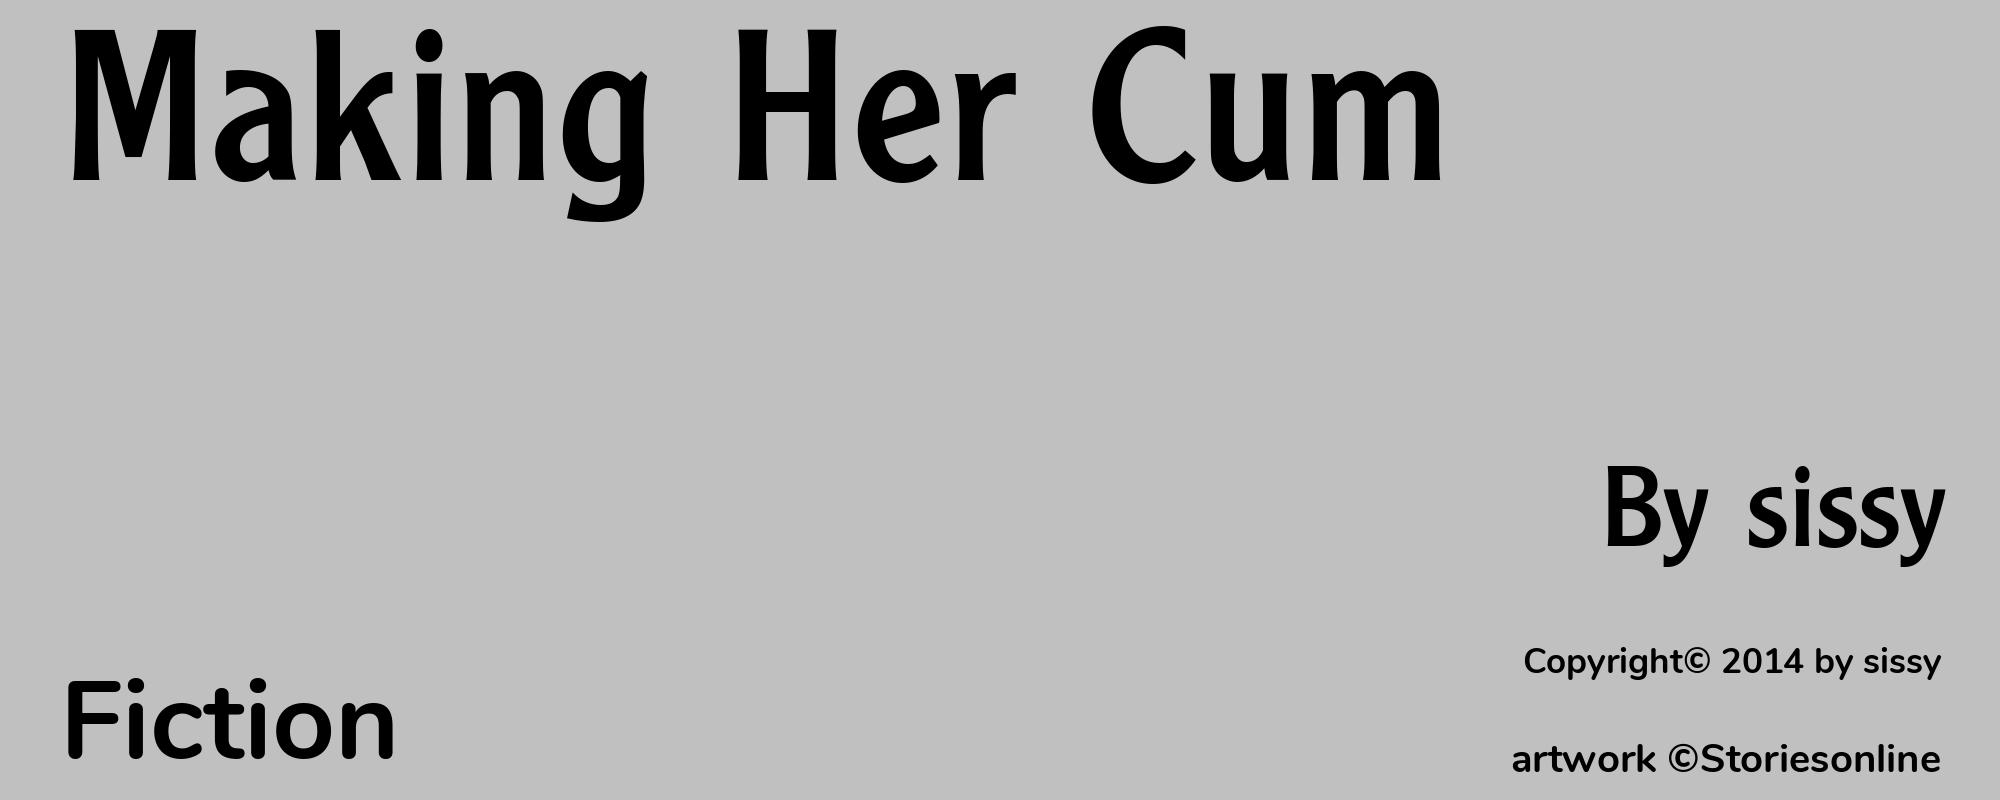 Making Her Cum - Cover